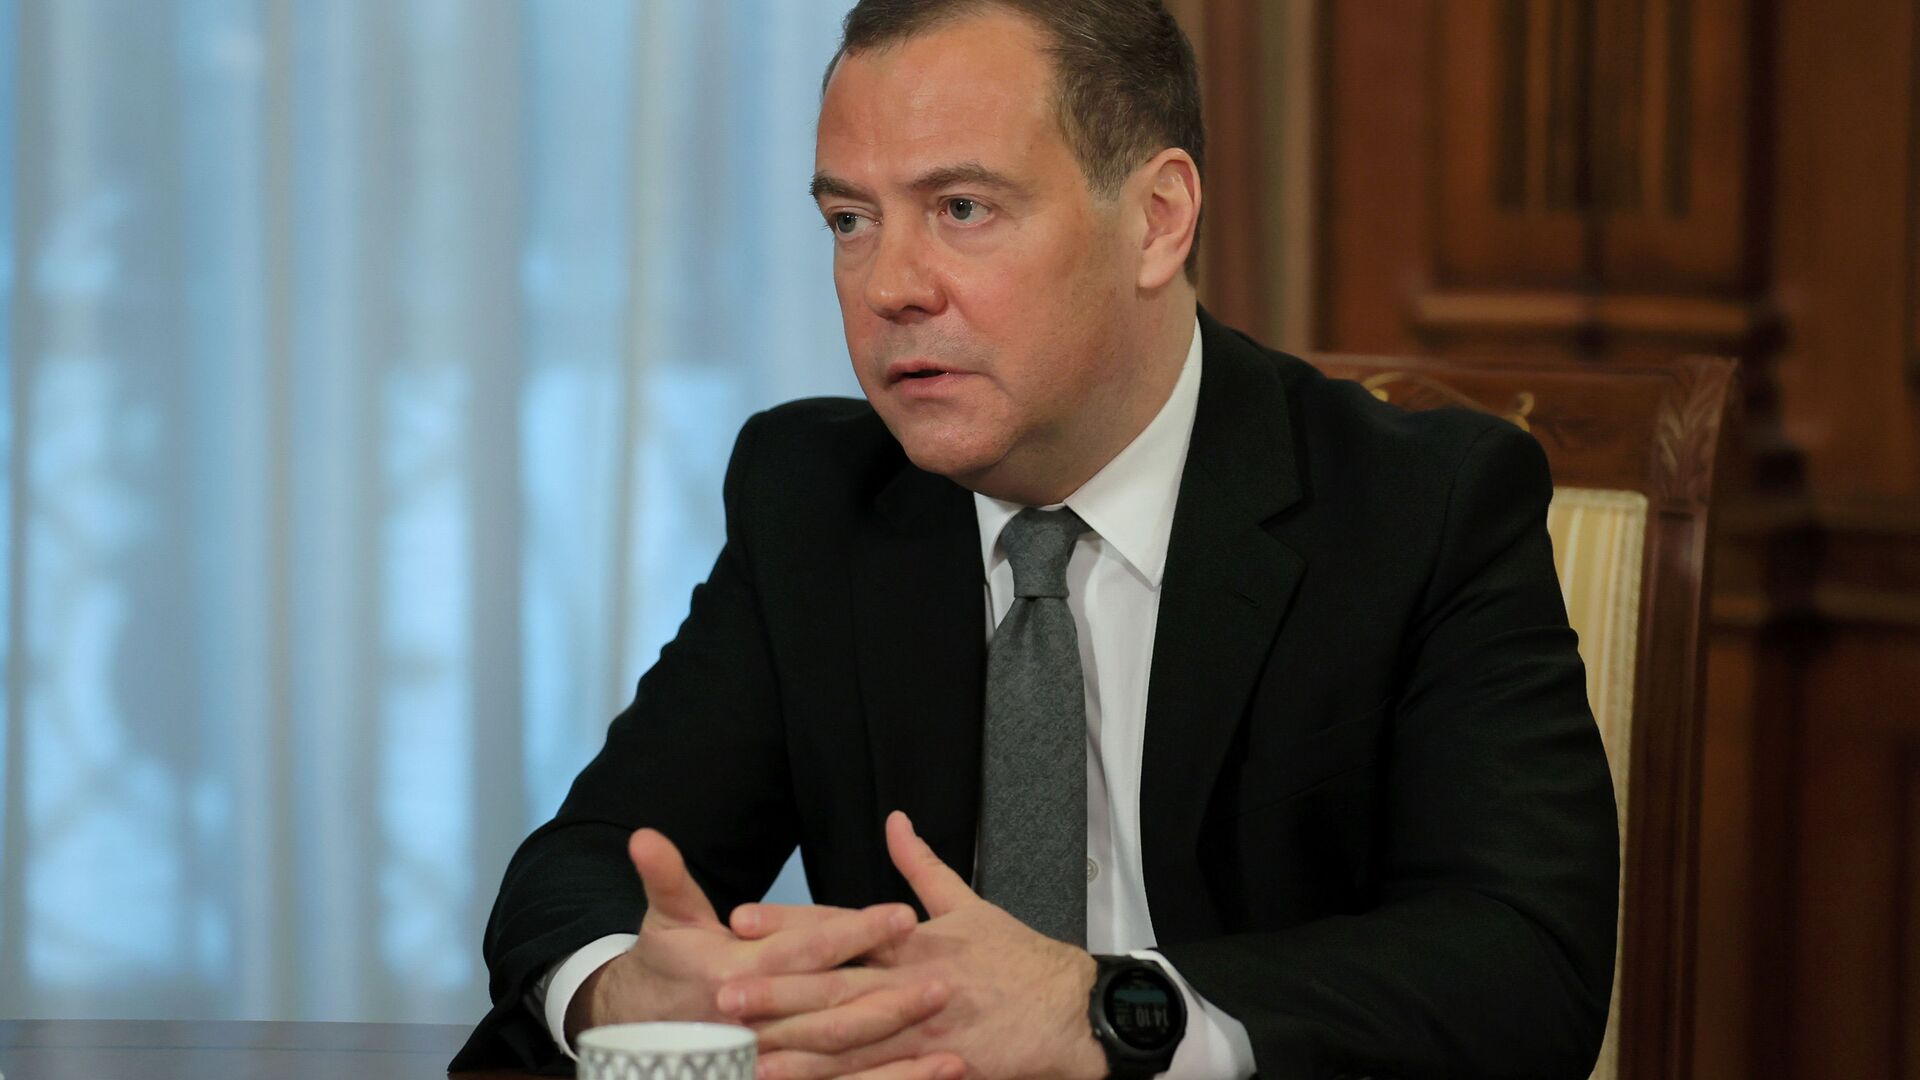 Заместитель председателя Совбеза РФ Д. Медведев дал интервью российским СМИ - Sputnik Аҧсны, 1920, 01.02.2021